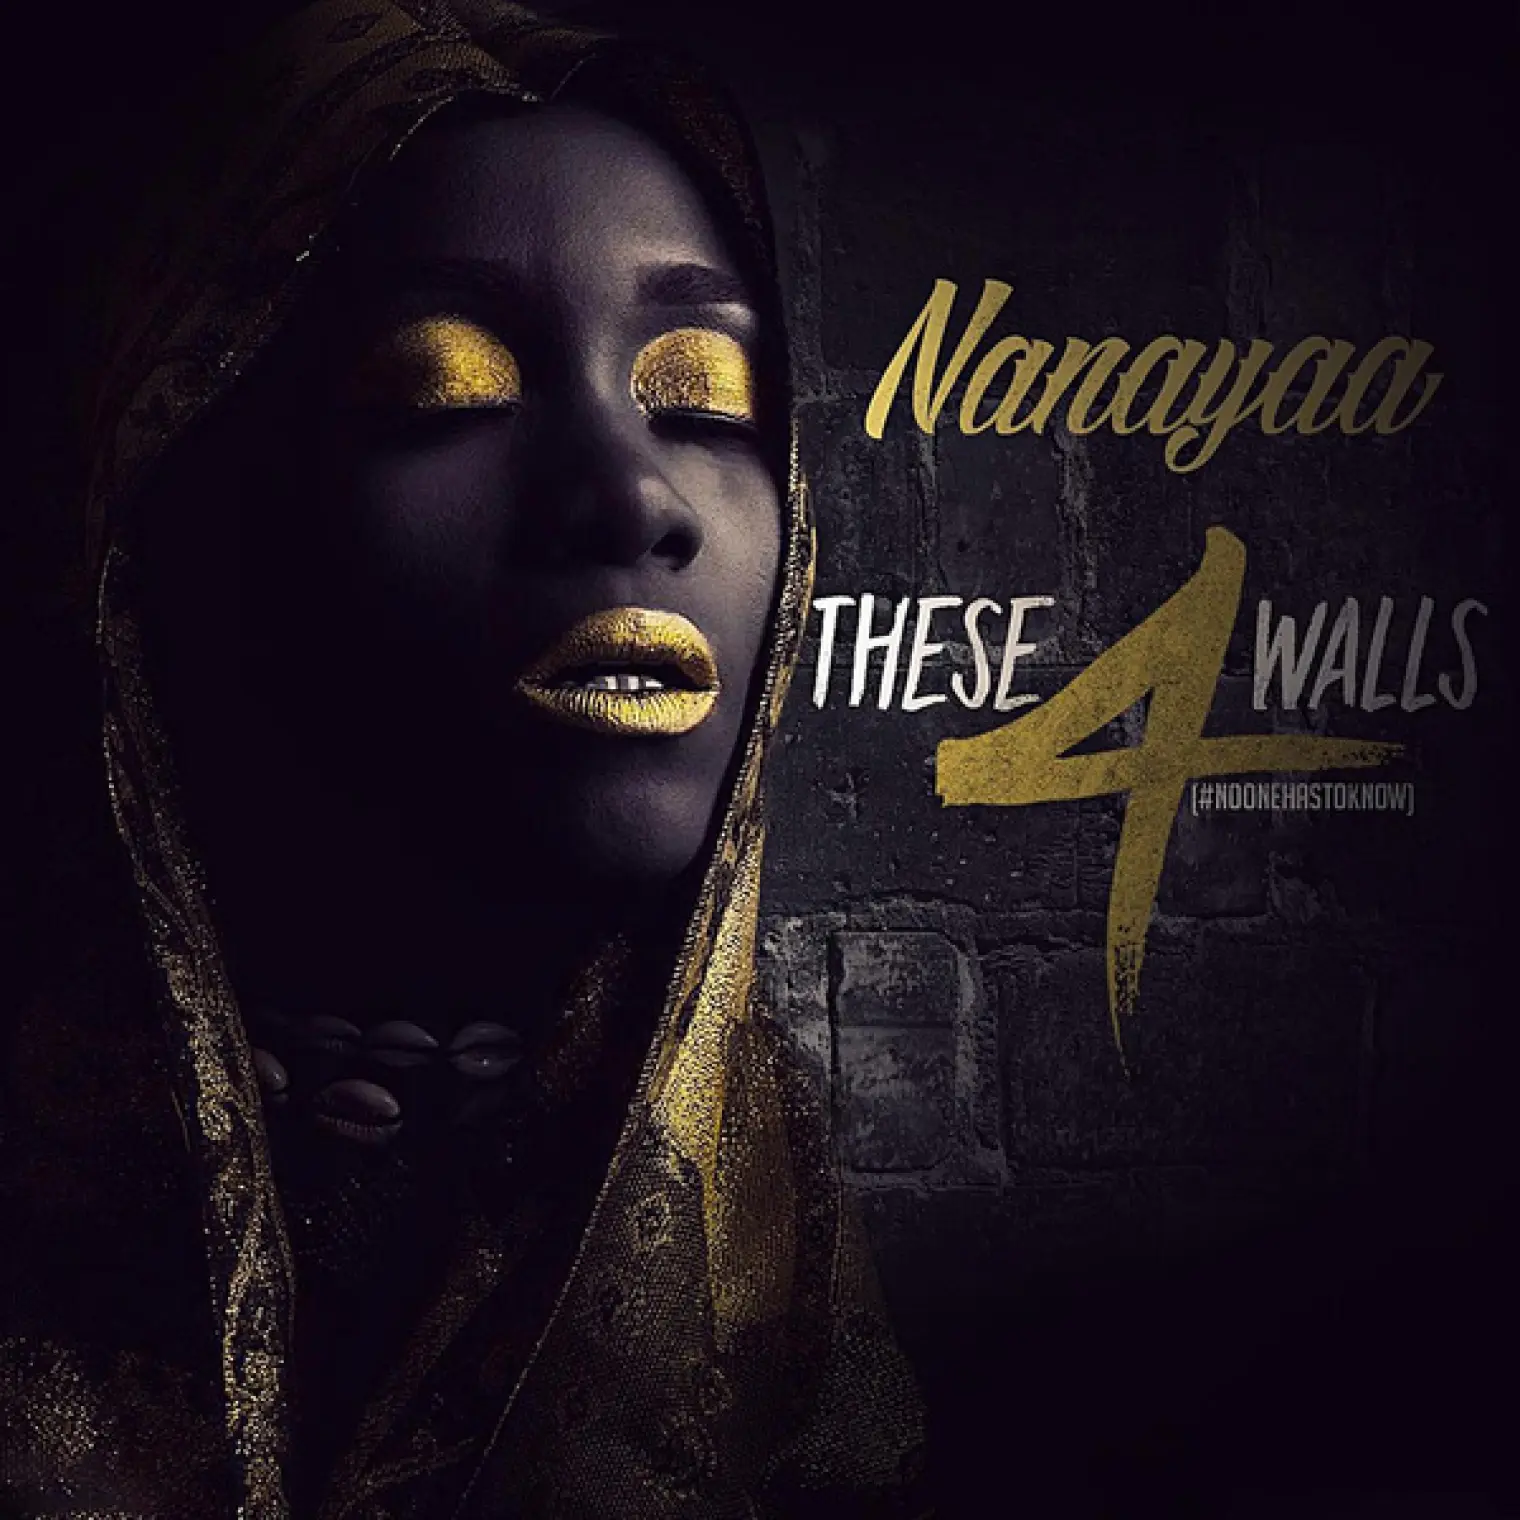 NooneHasToKnow (These 4 Walls) -  Nanayaa 